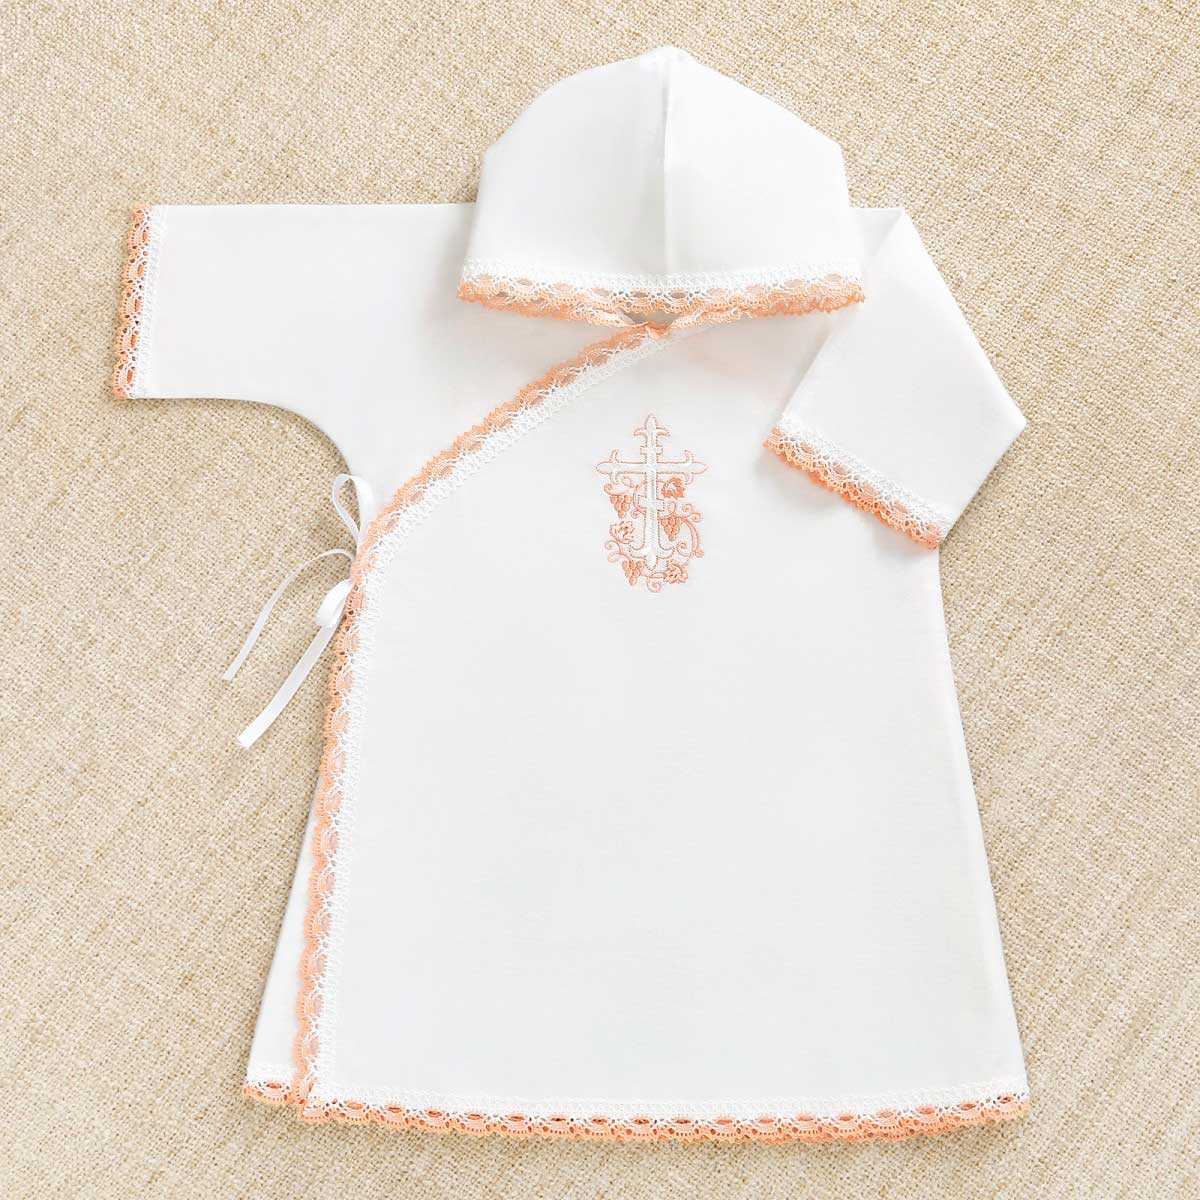 Крестильный набор для мальчика - что в него в компект: рубашка для крещения, полотенце в комплекте для крестин, чепчик, крестик, одежда